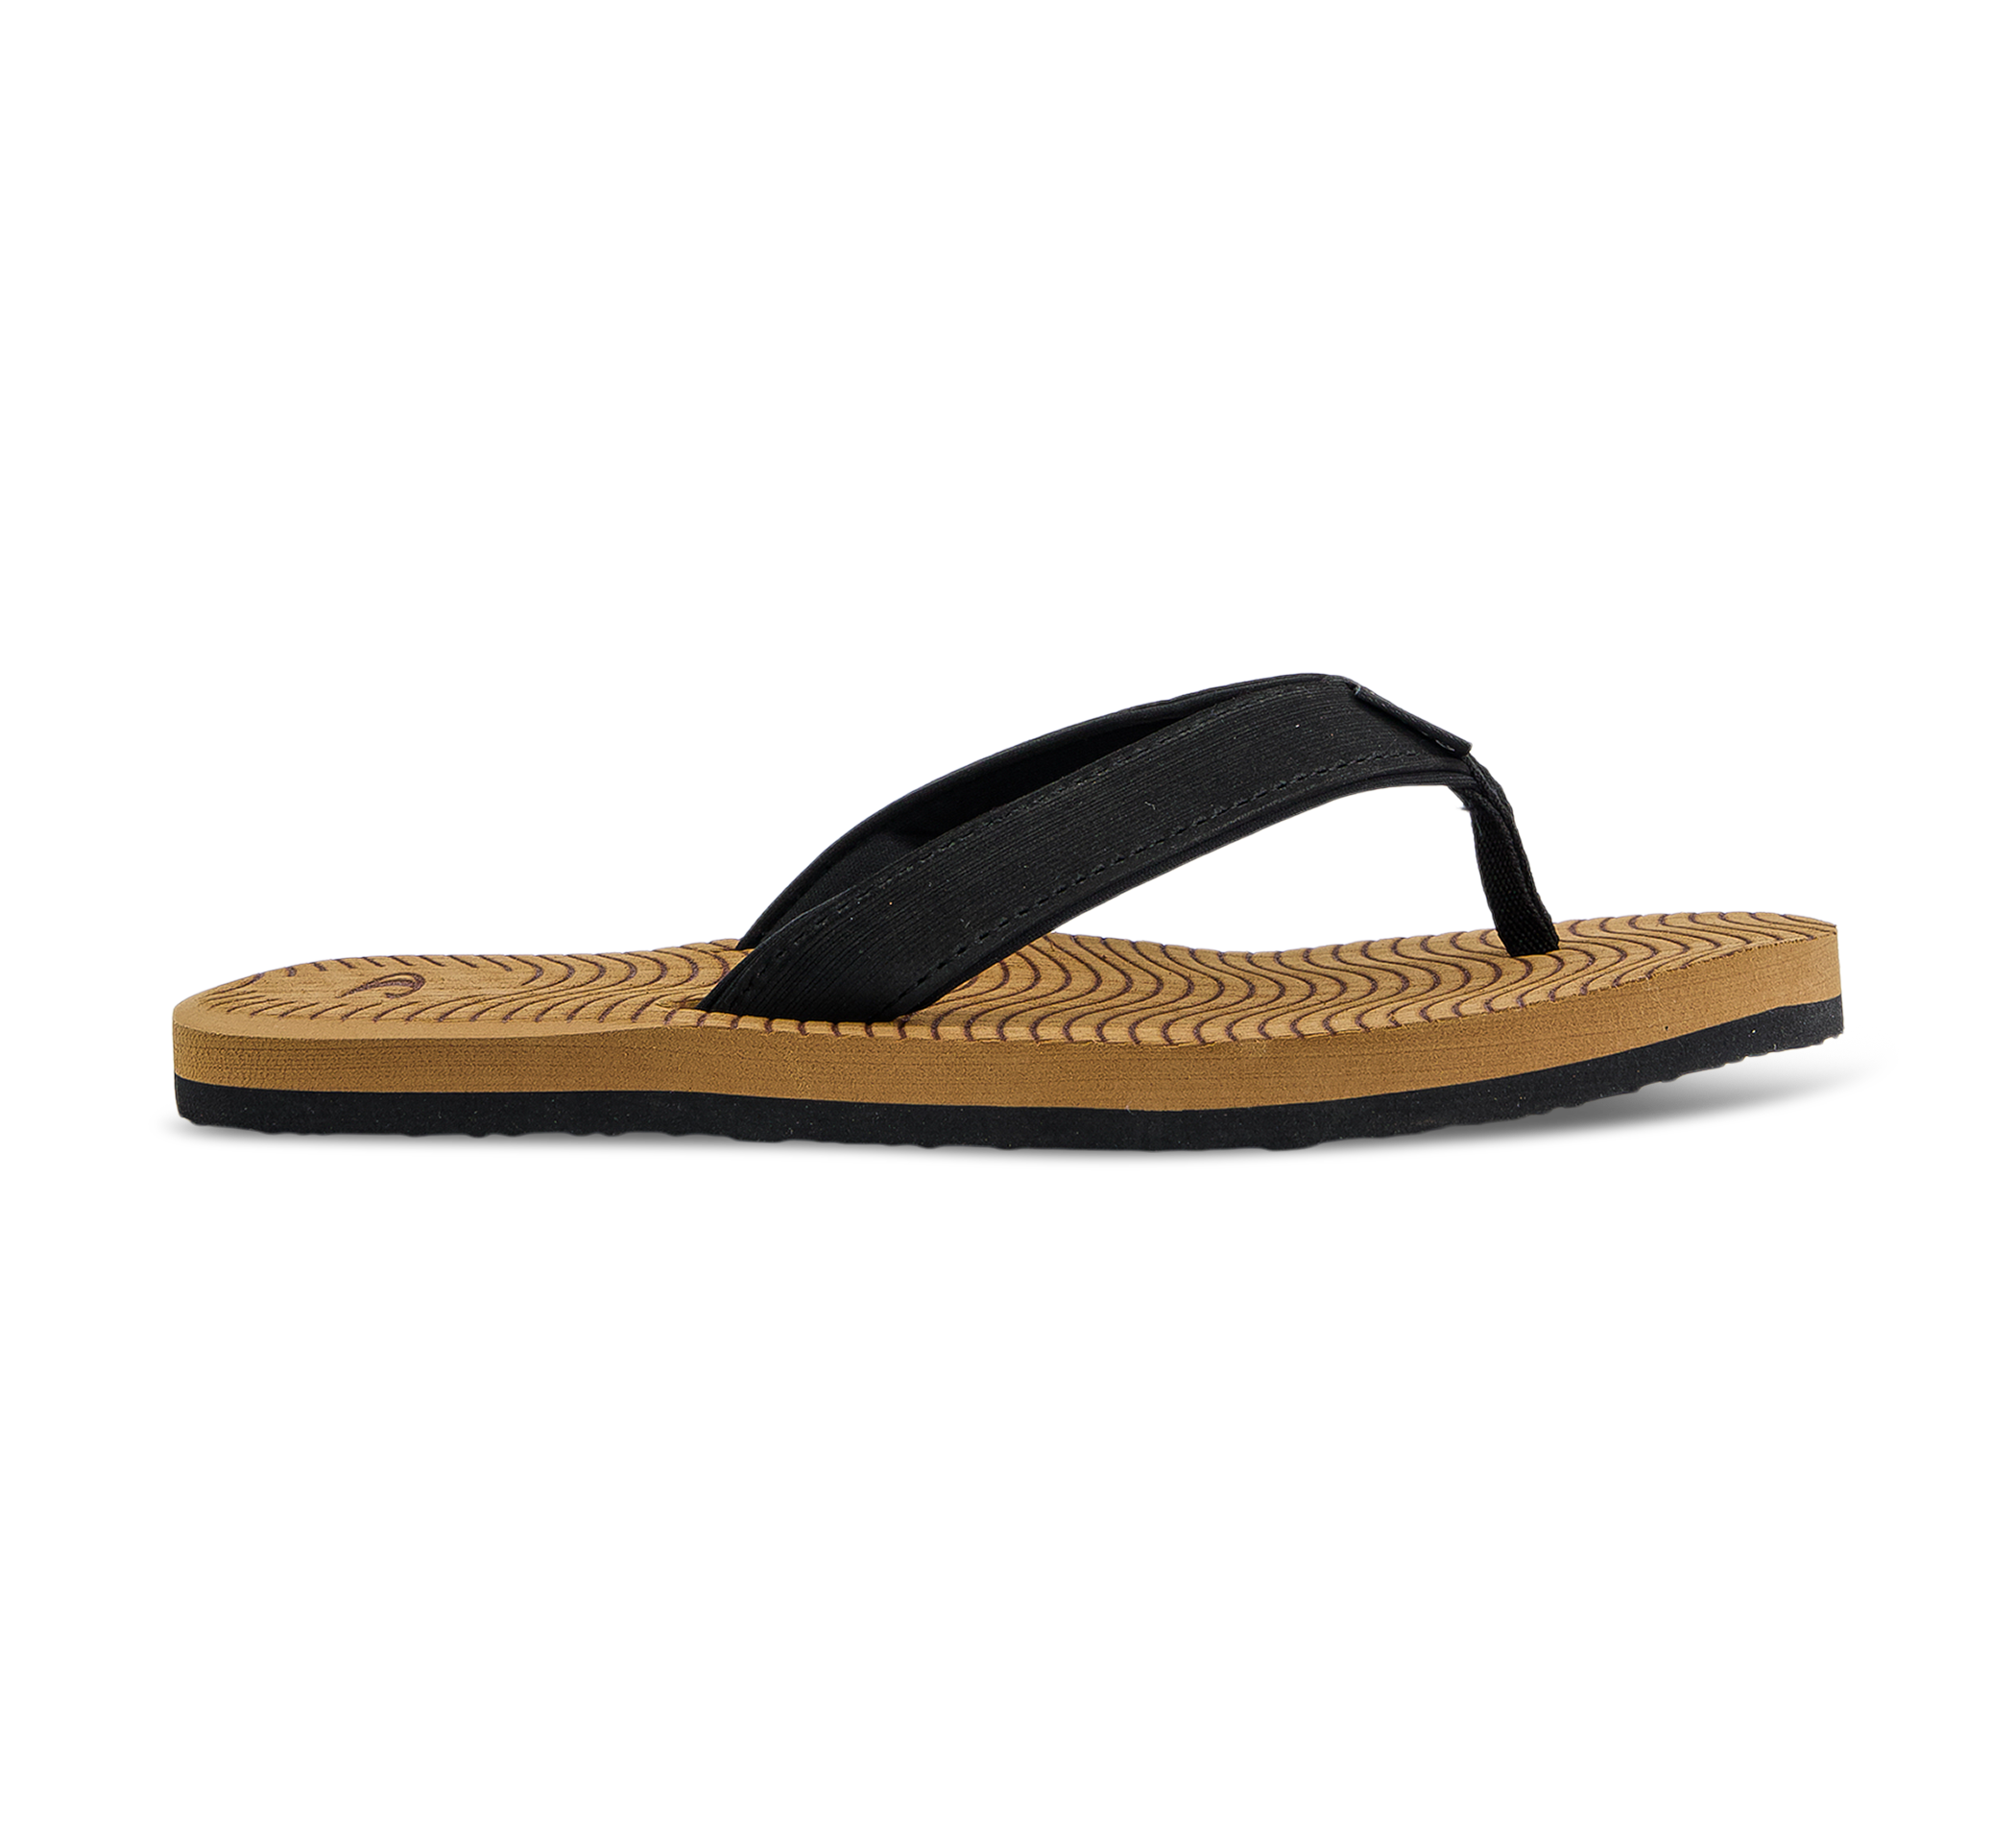 Koosh Sandals - Flip Flops